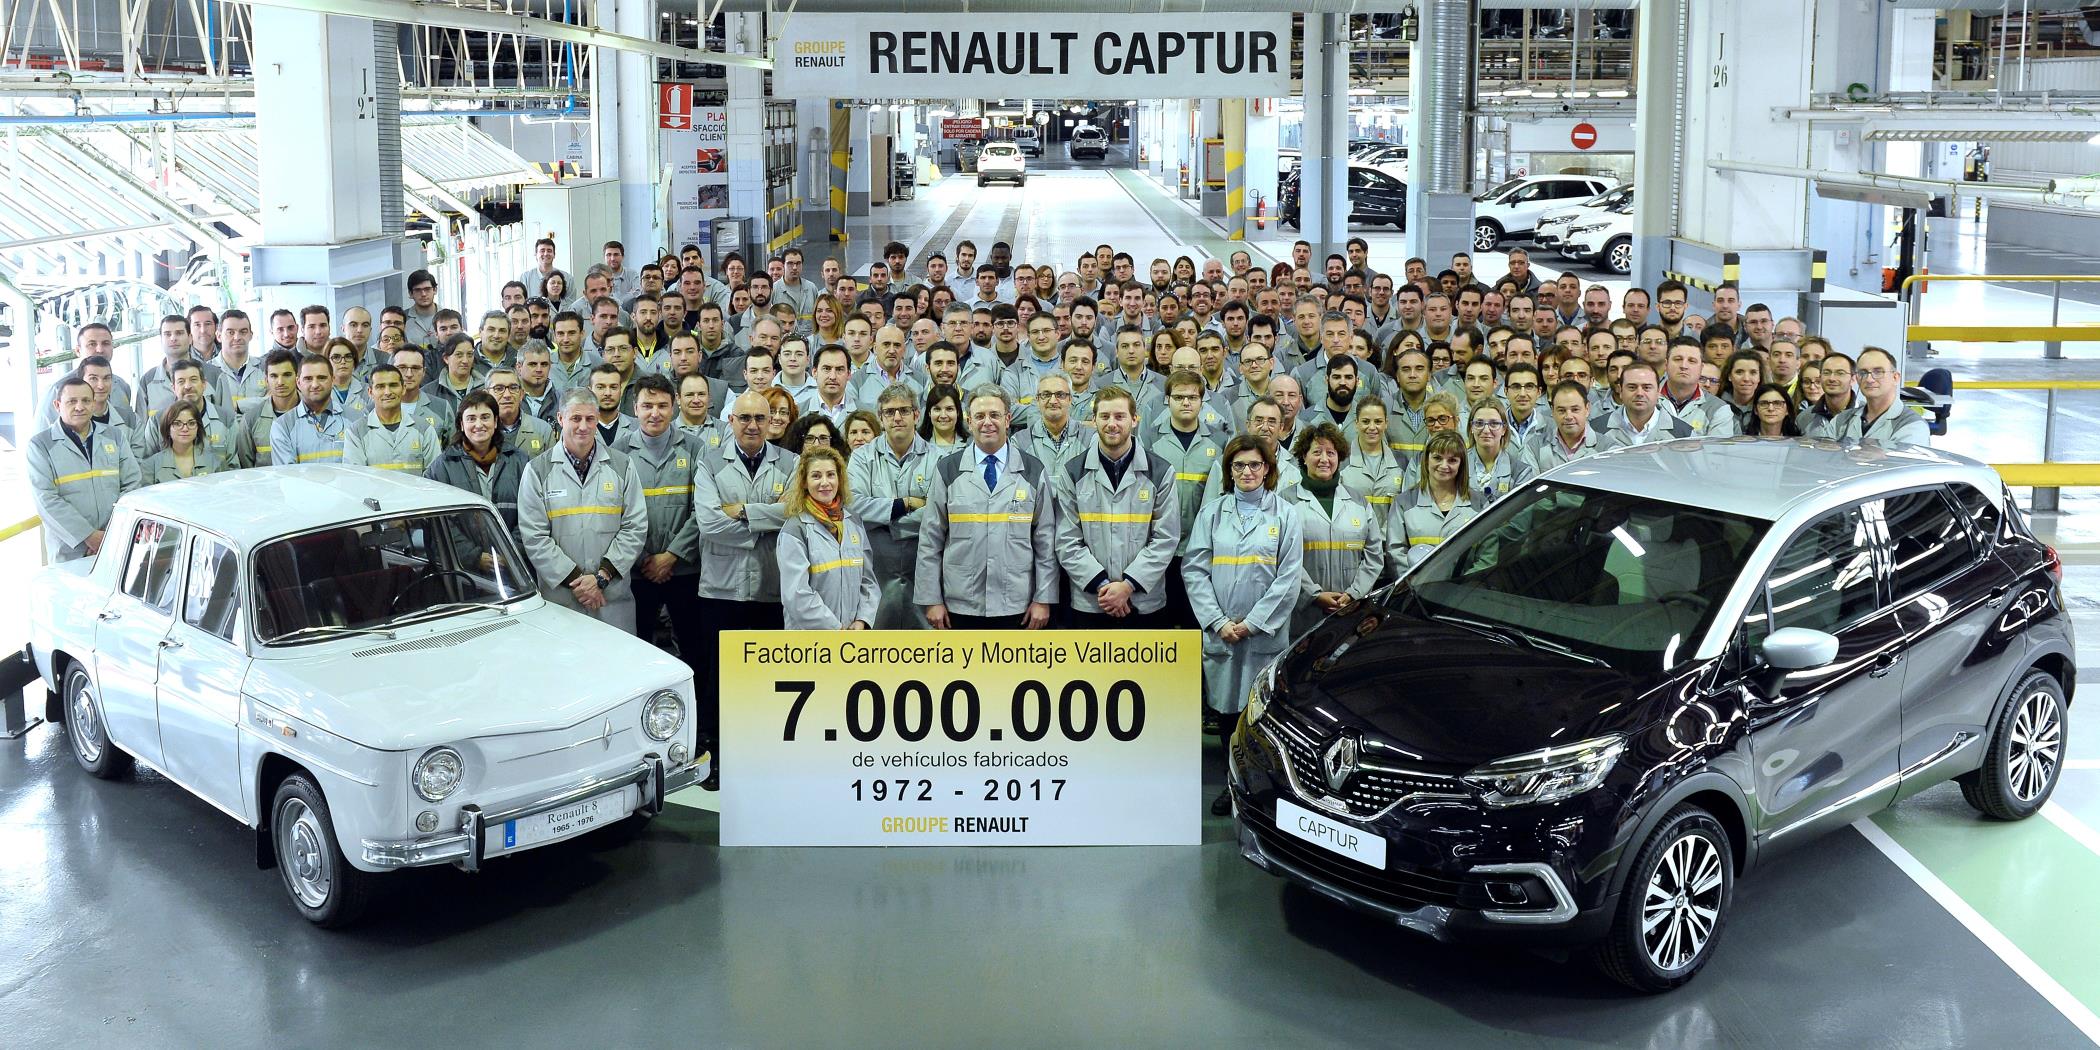 La factoría de Carrocería y Montaje de Renault en Valladolid ha fabricado el vehículo siete millones